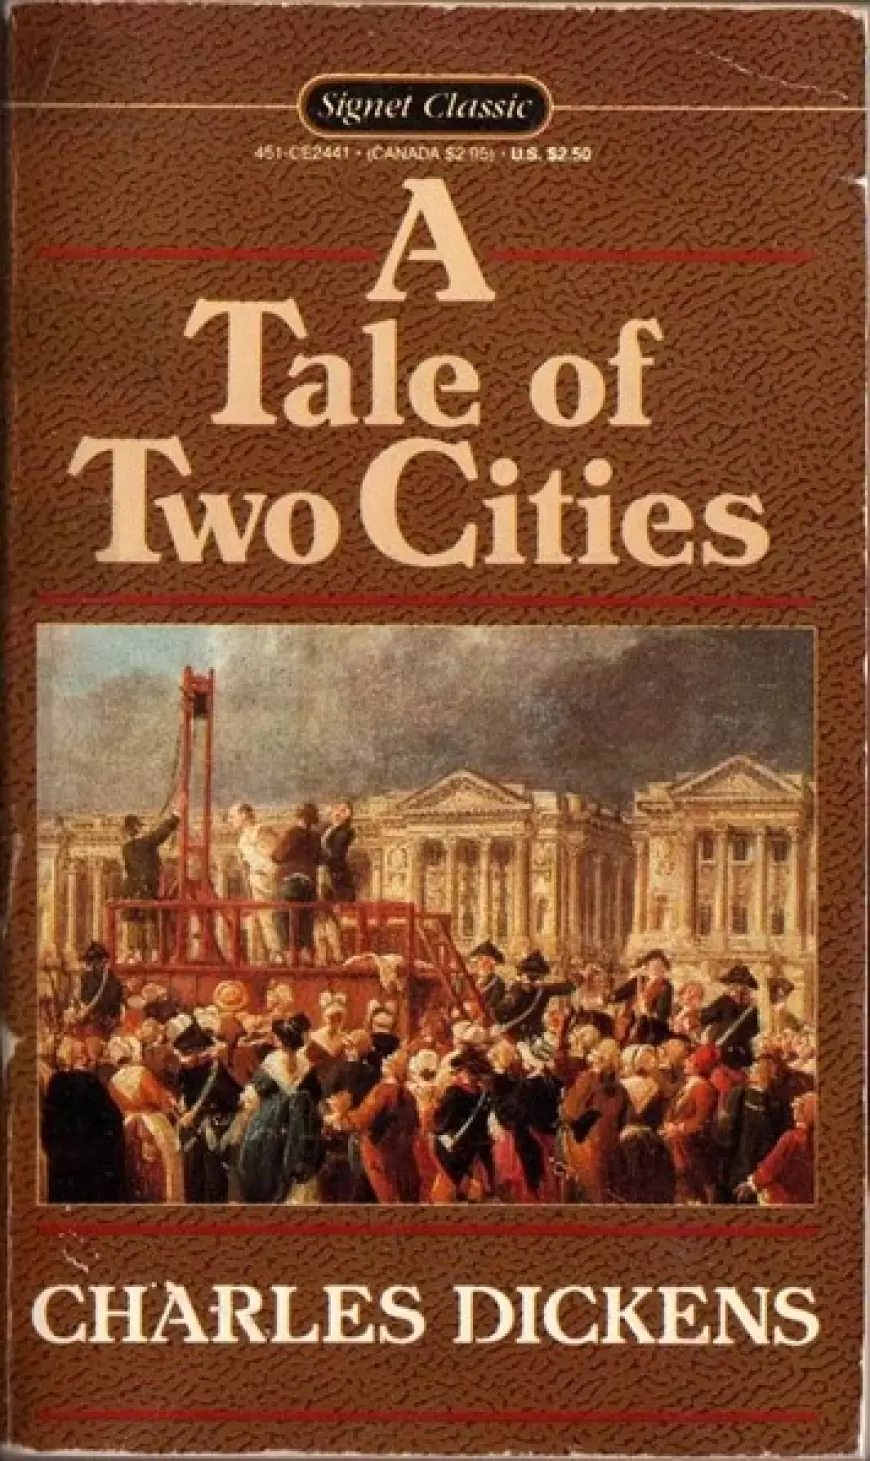 کتاب داستان دو شهر